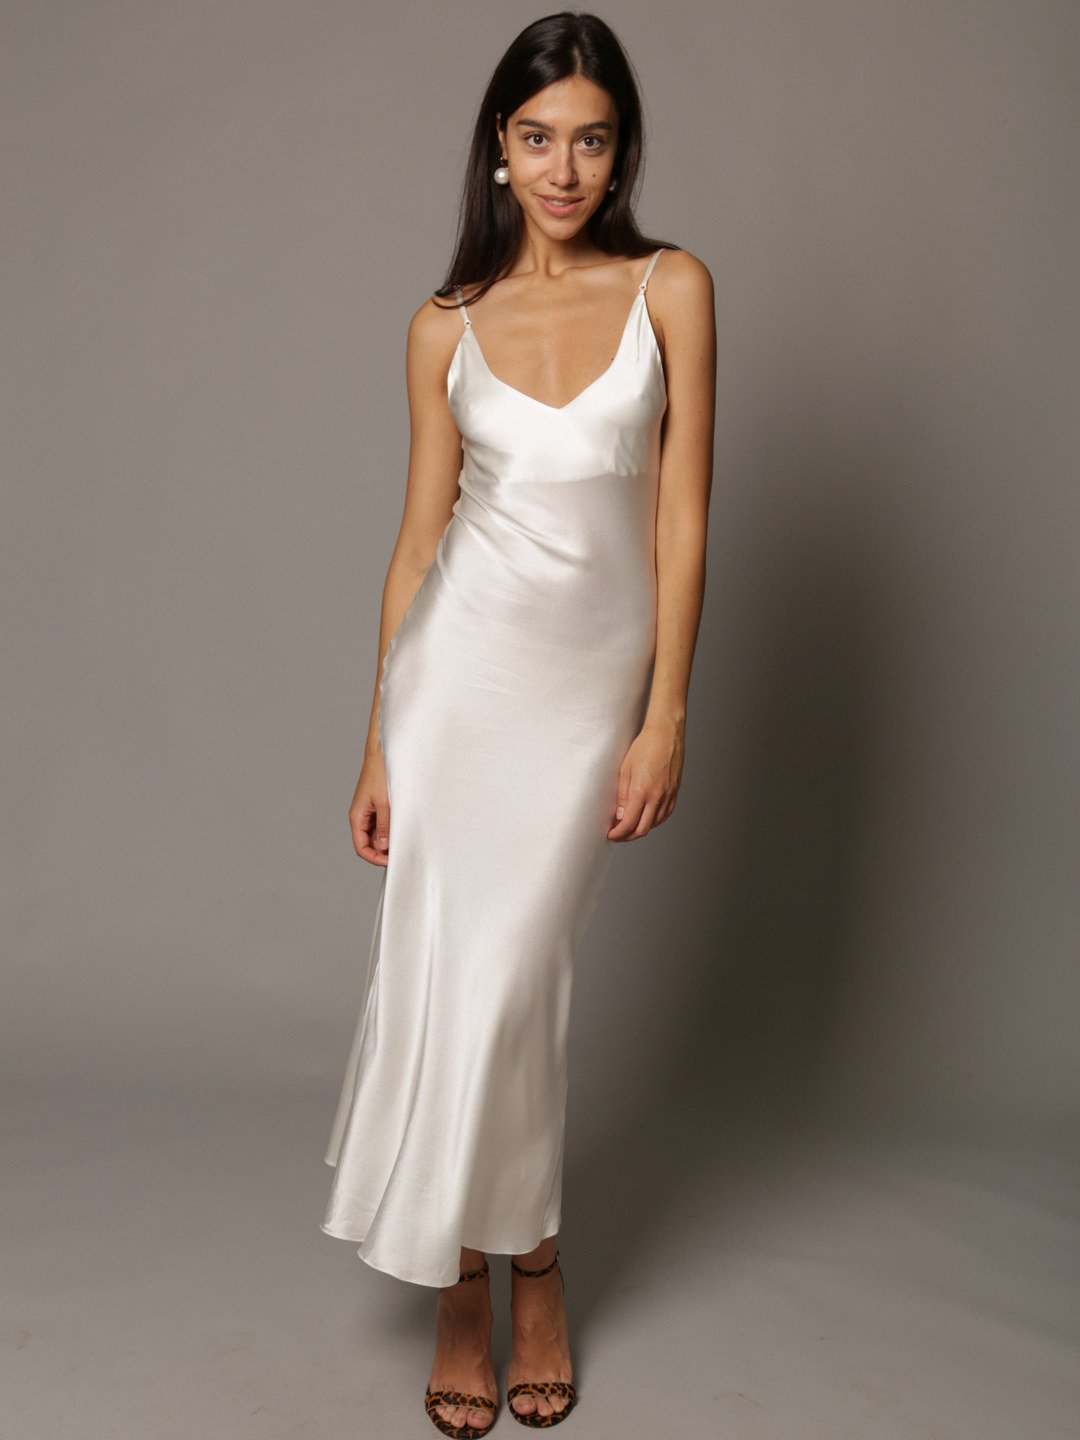 Платья белые шелка. Белое шелковое платье. Атласное платье на бретельках. Белое платье комбинация. Белое платье на тонких бретельках.